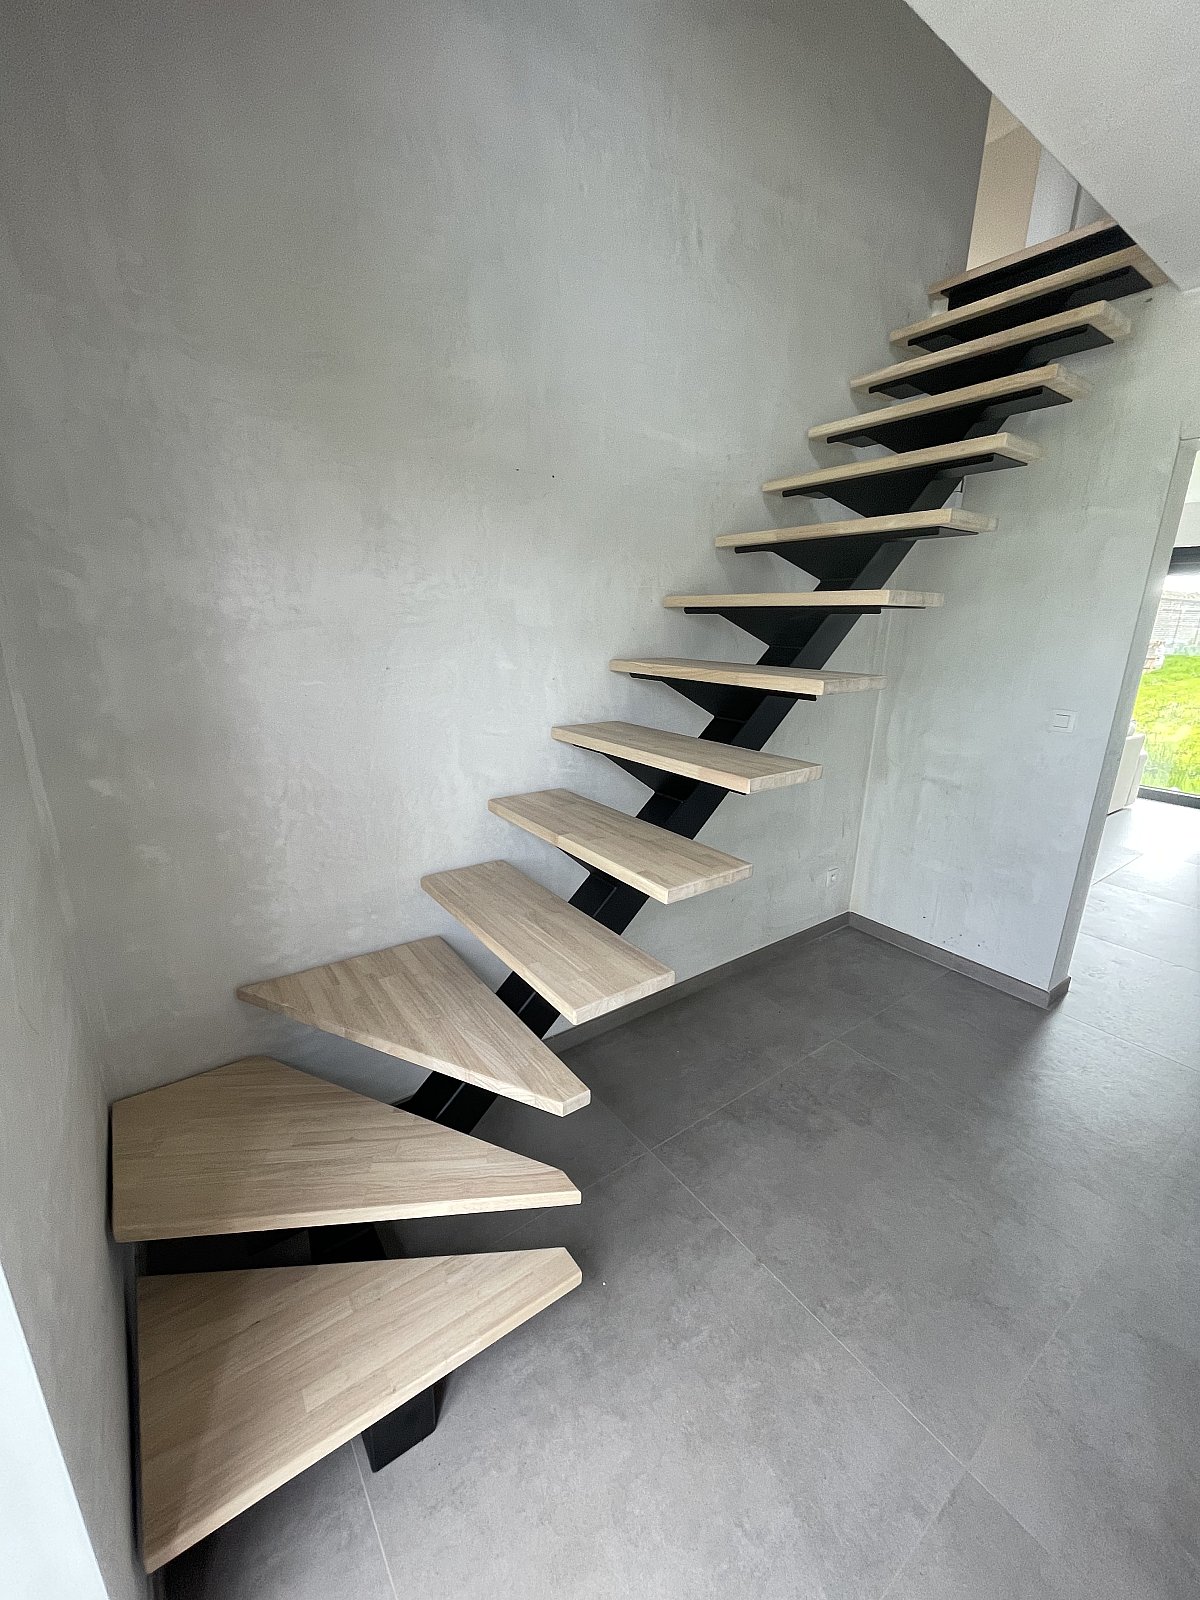 Escalier bois/metal Mettet - Menuiserie intérieure portes et escaliers sur mesure Créa-M